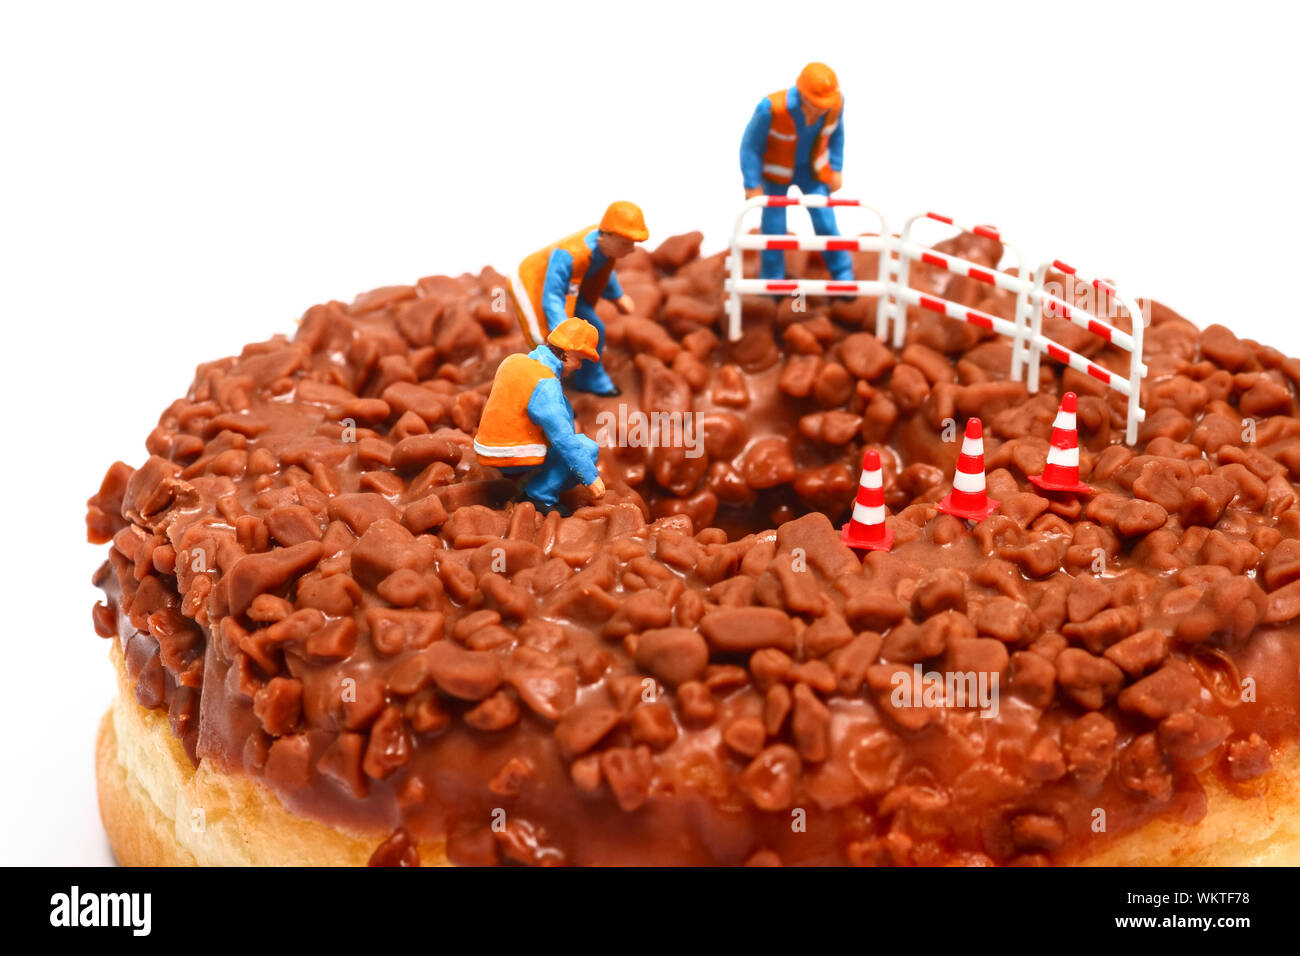 Imagen conceptual de una figura en miniatura de obreros se situó en un donut de chocolate mirando hacia abajo por el orificio central Foto de stock